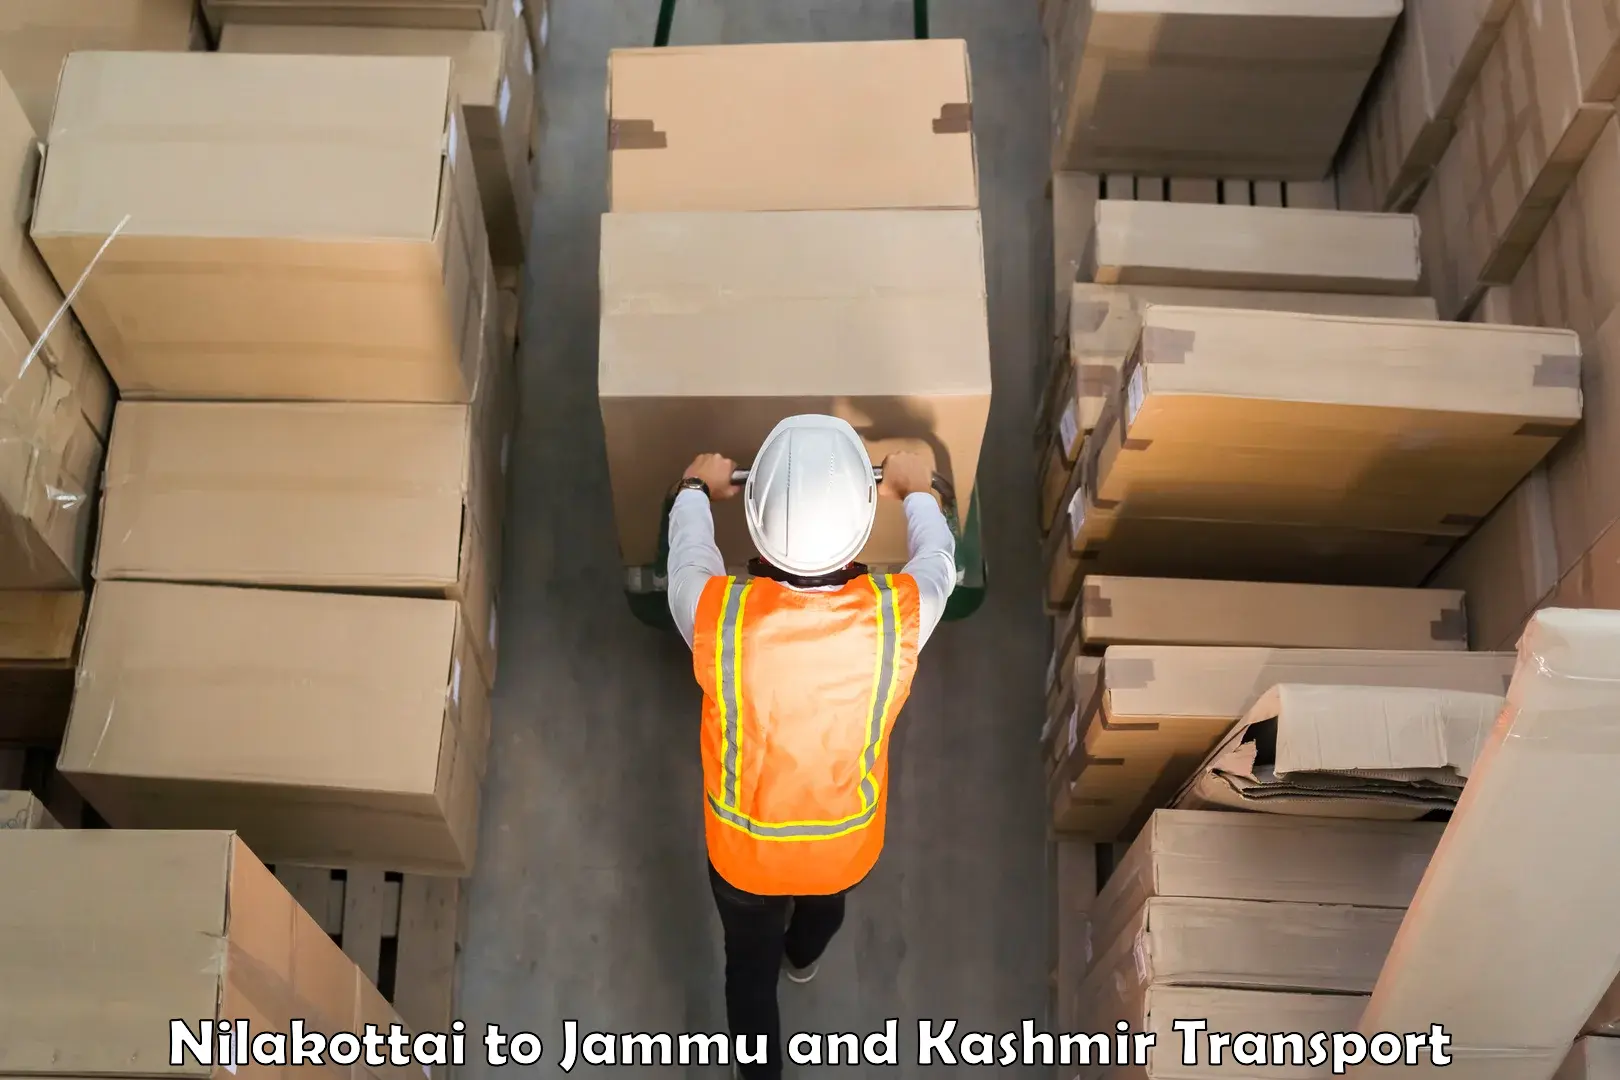 Lorry transport service Nilakottai to University of Jammu